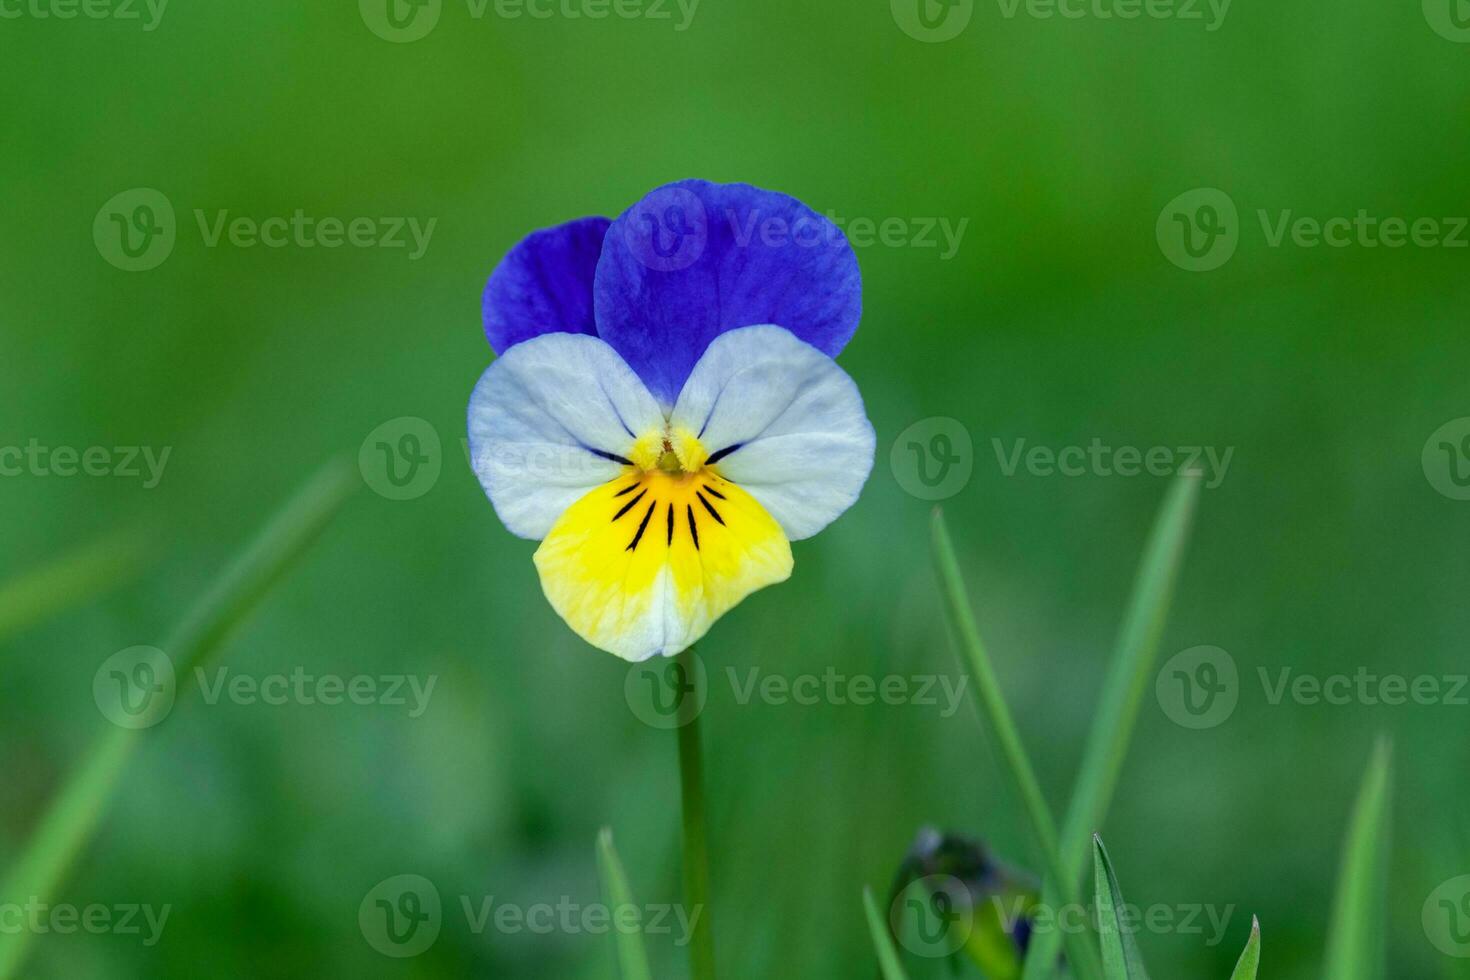 fikus blomma altfiol tricolor på grön gräs bakgrund foto